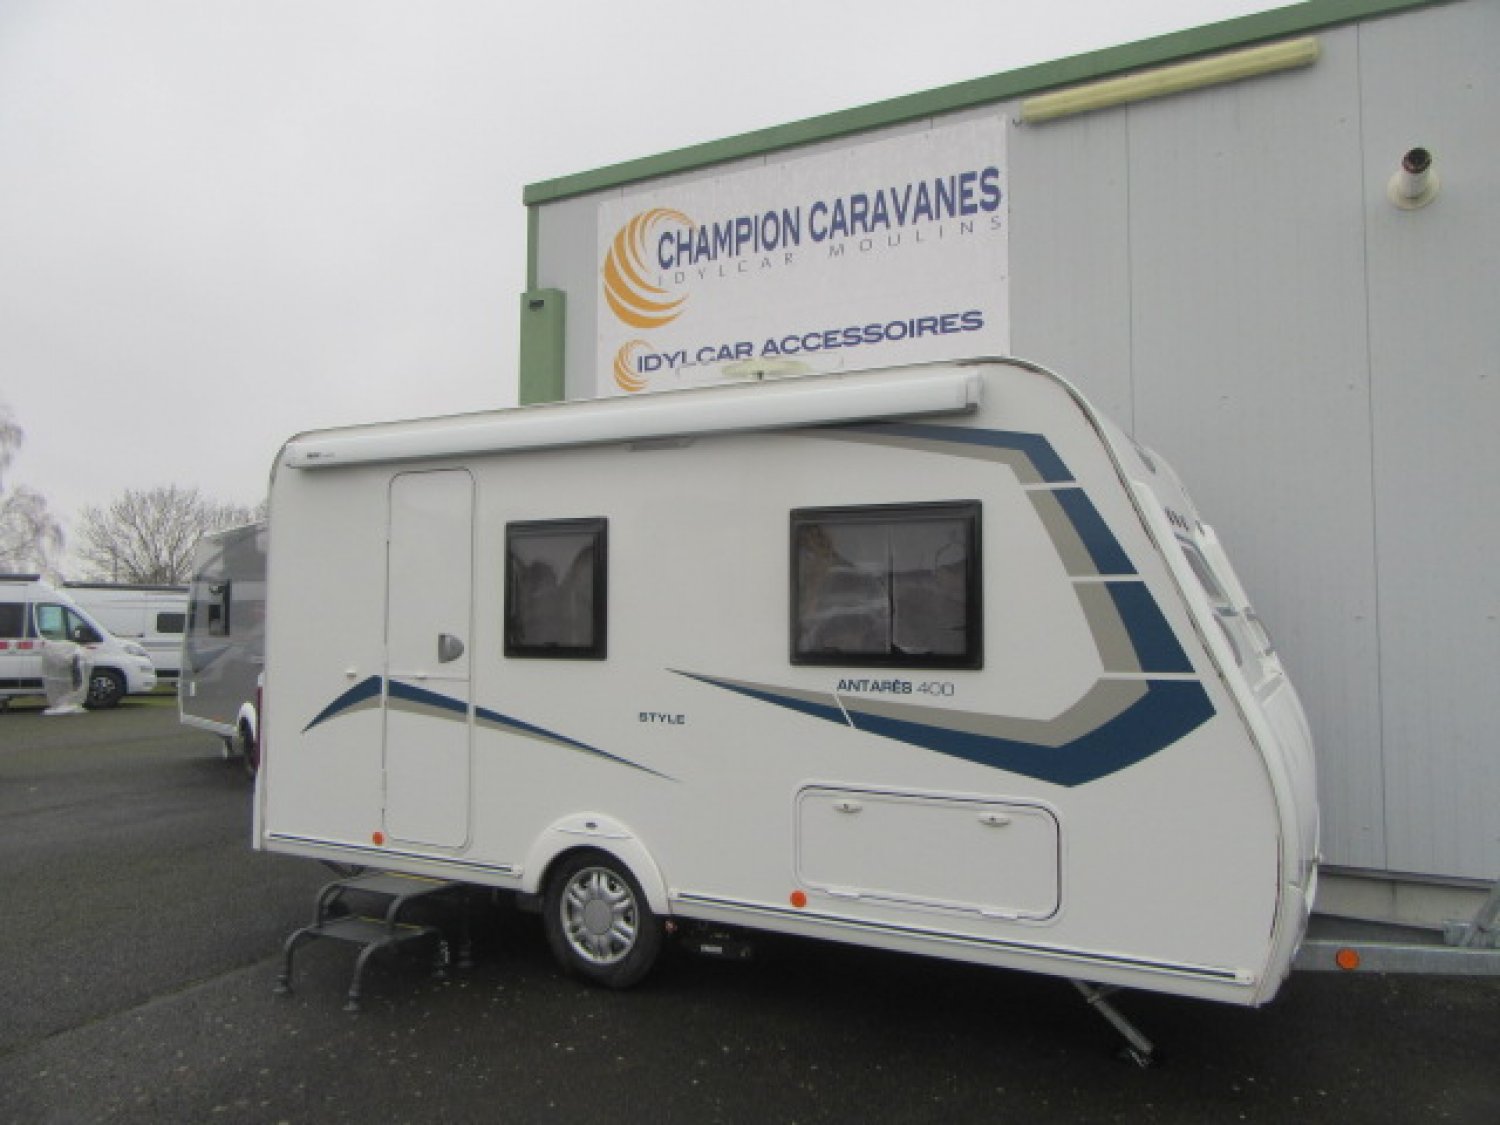 Champion Caravanes et Camping Car - Caravelair ANTARES STYLE 400 à 11 900 €€